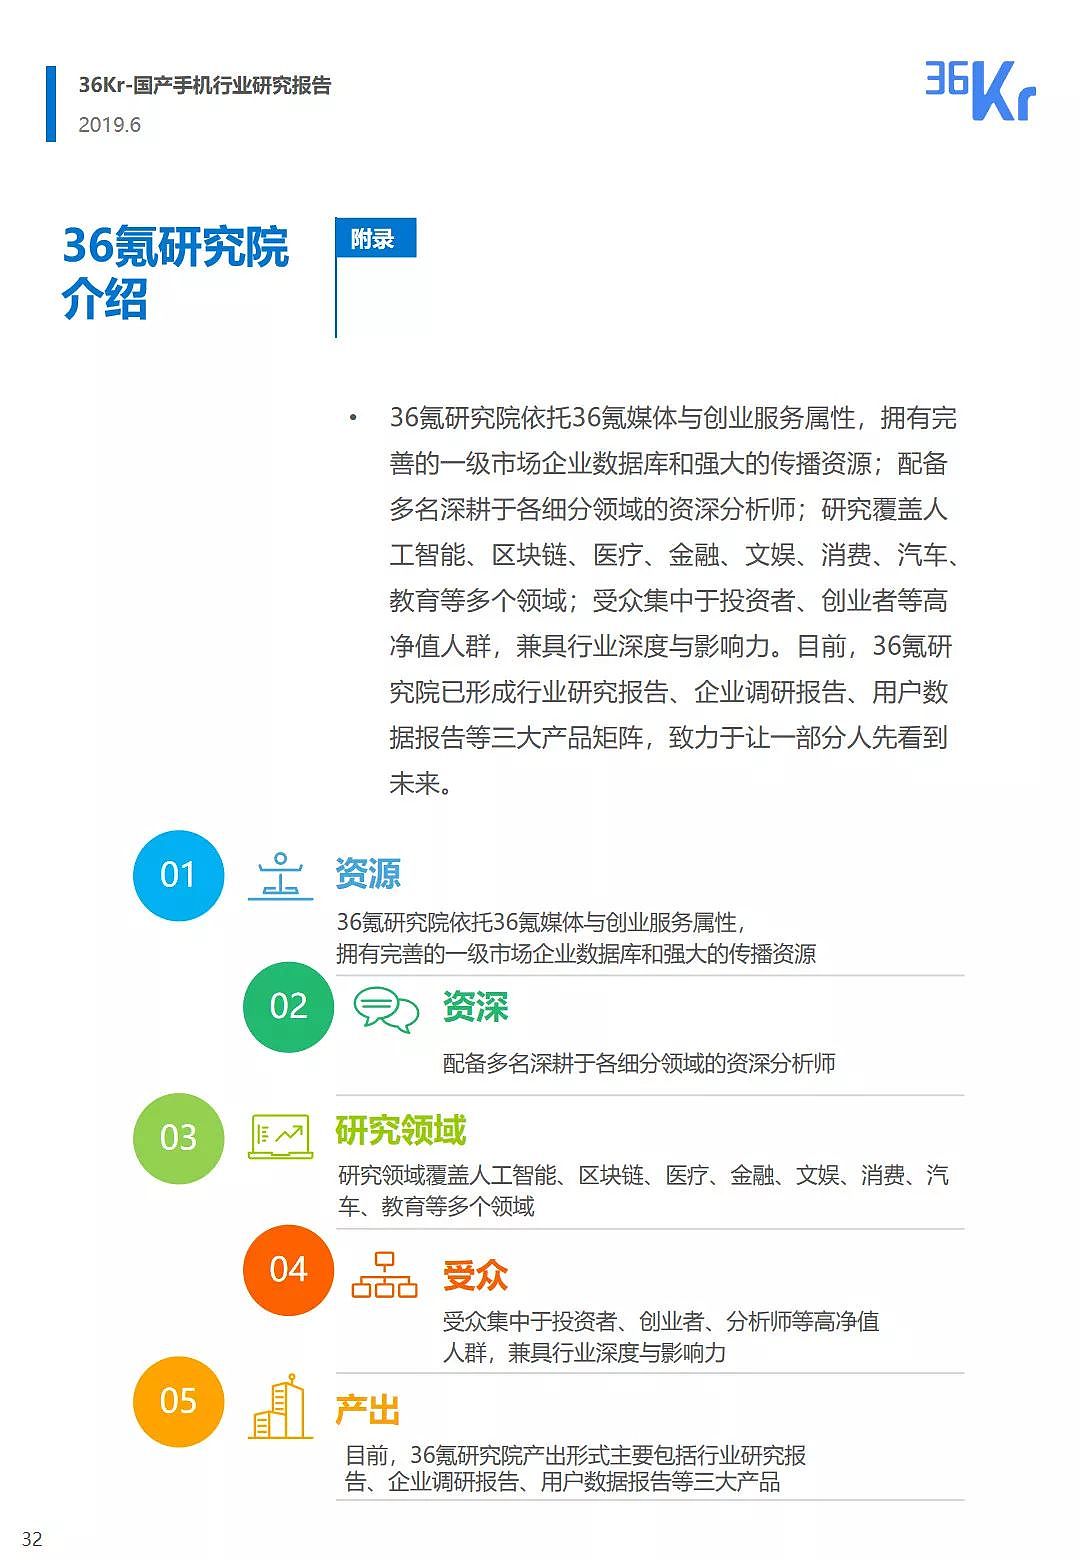 中国手机品牌市场营销研究报告 | 36氪研究 - 33